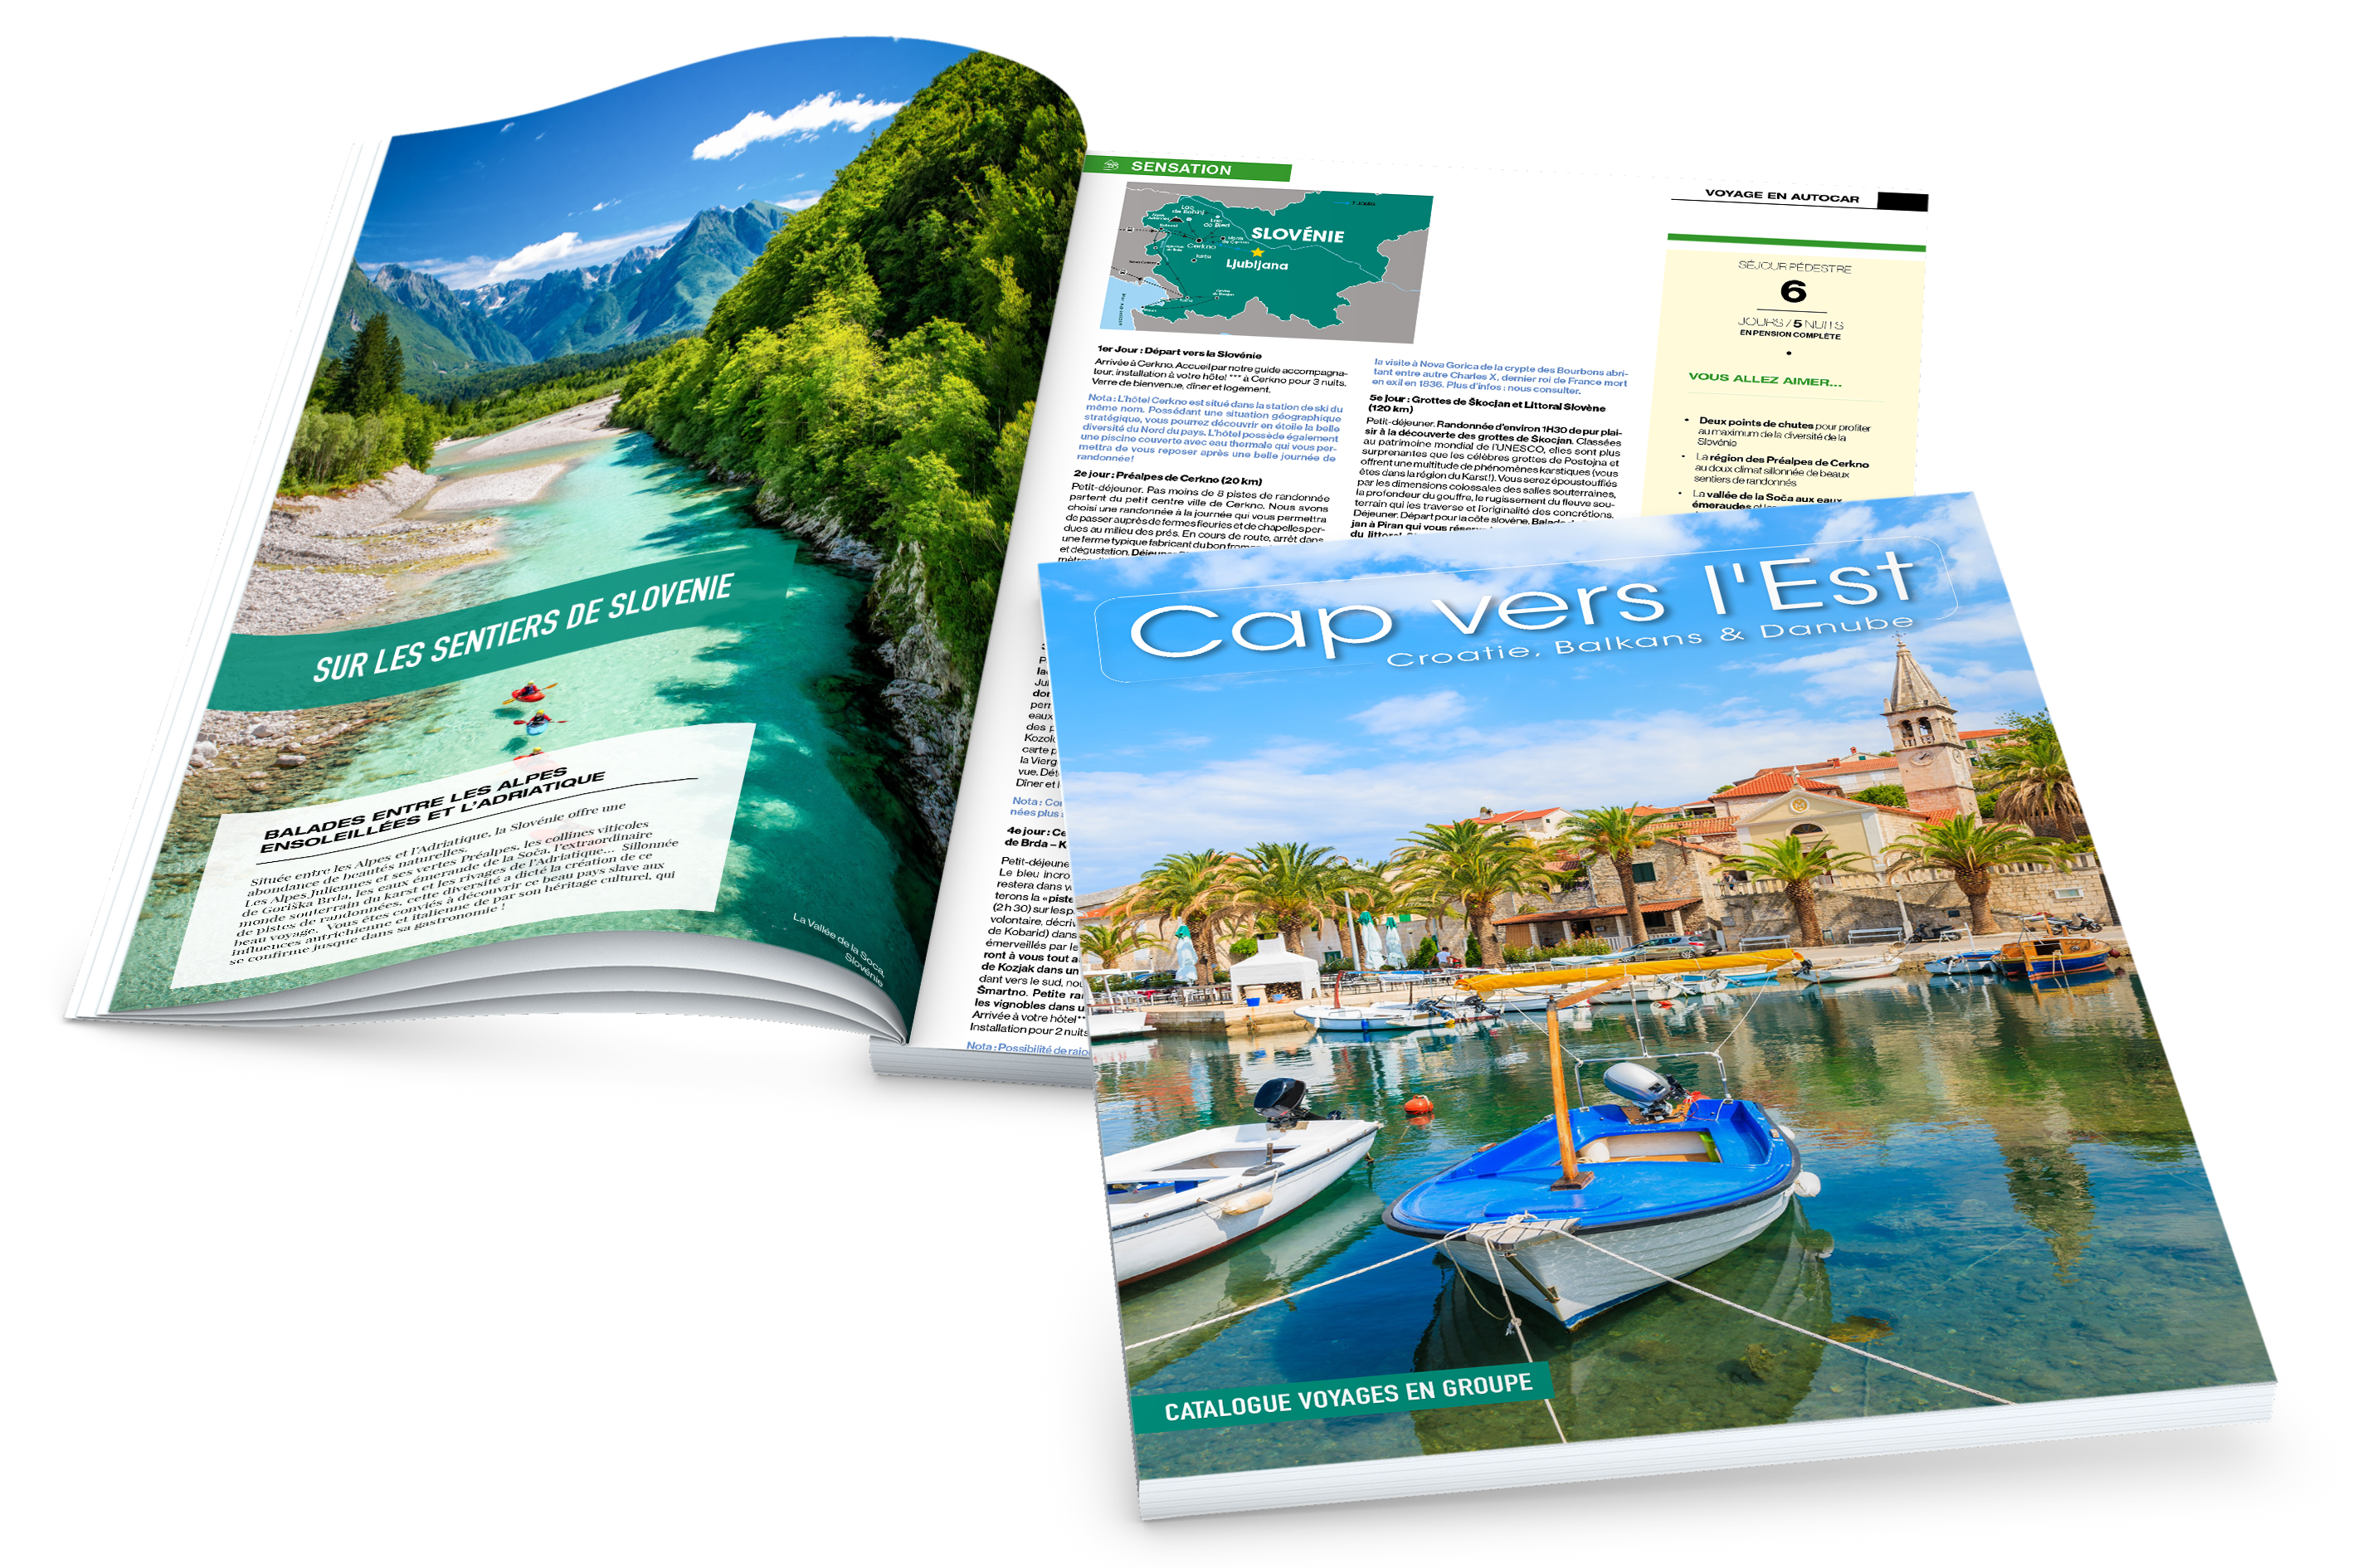 Réceptif Croatie, Cap Vers l'Est, catalogue, brochure, voyages en groupe, Croatie, Balkans, Danube